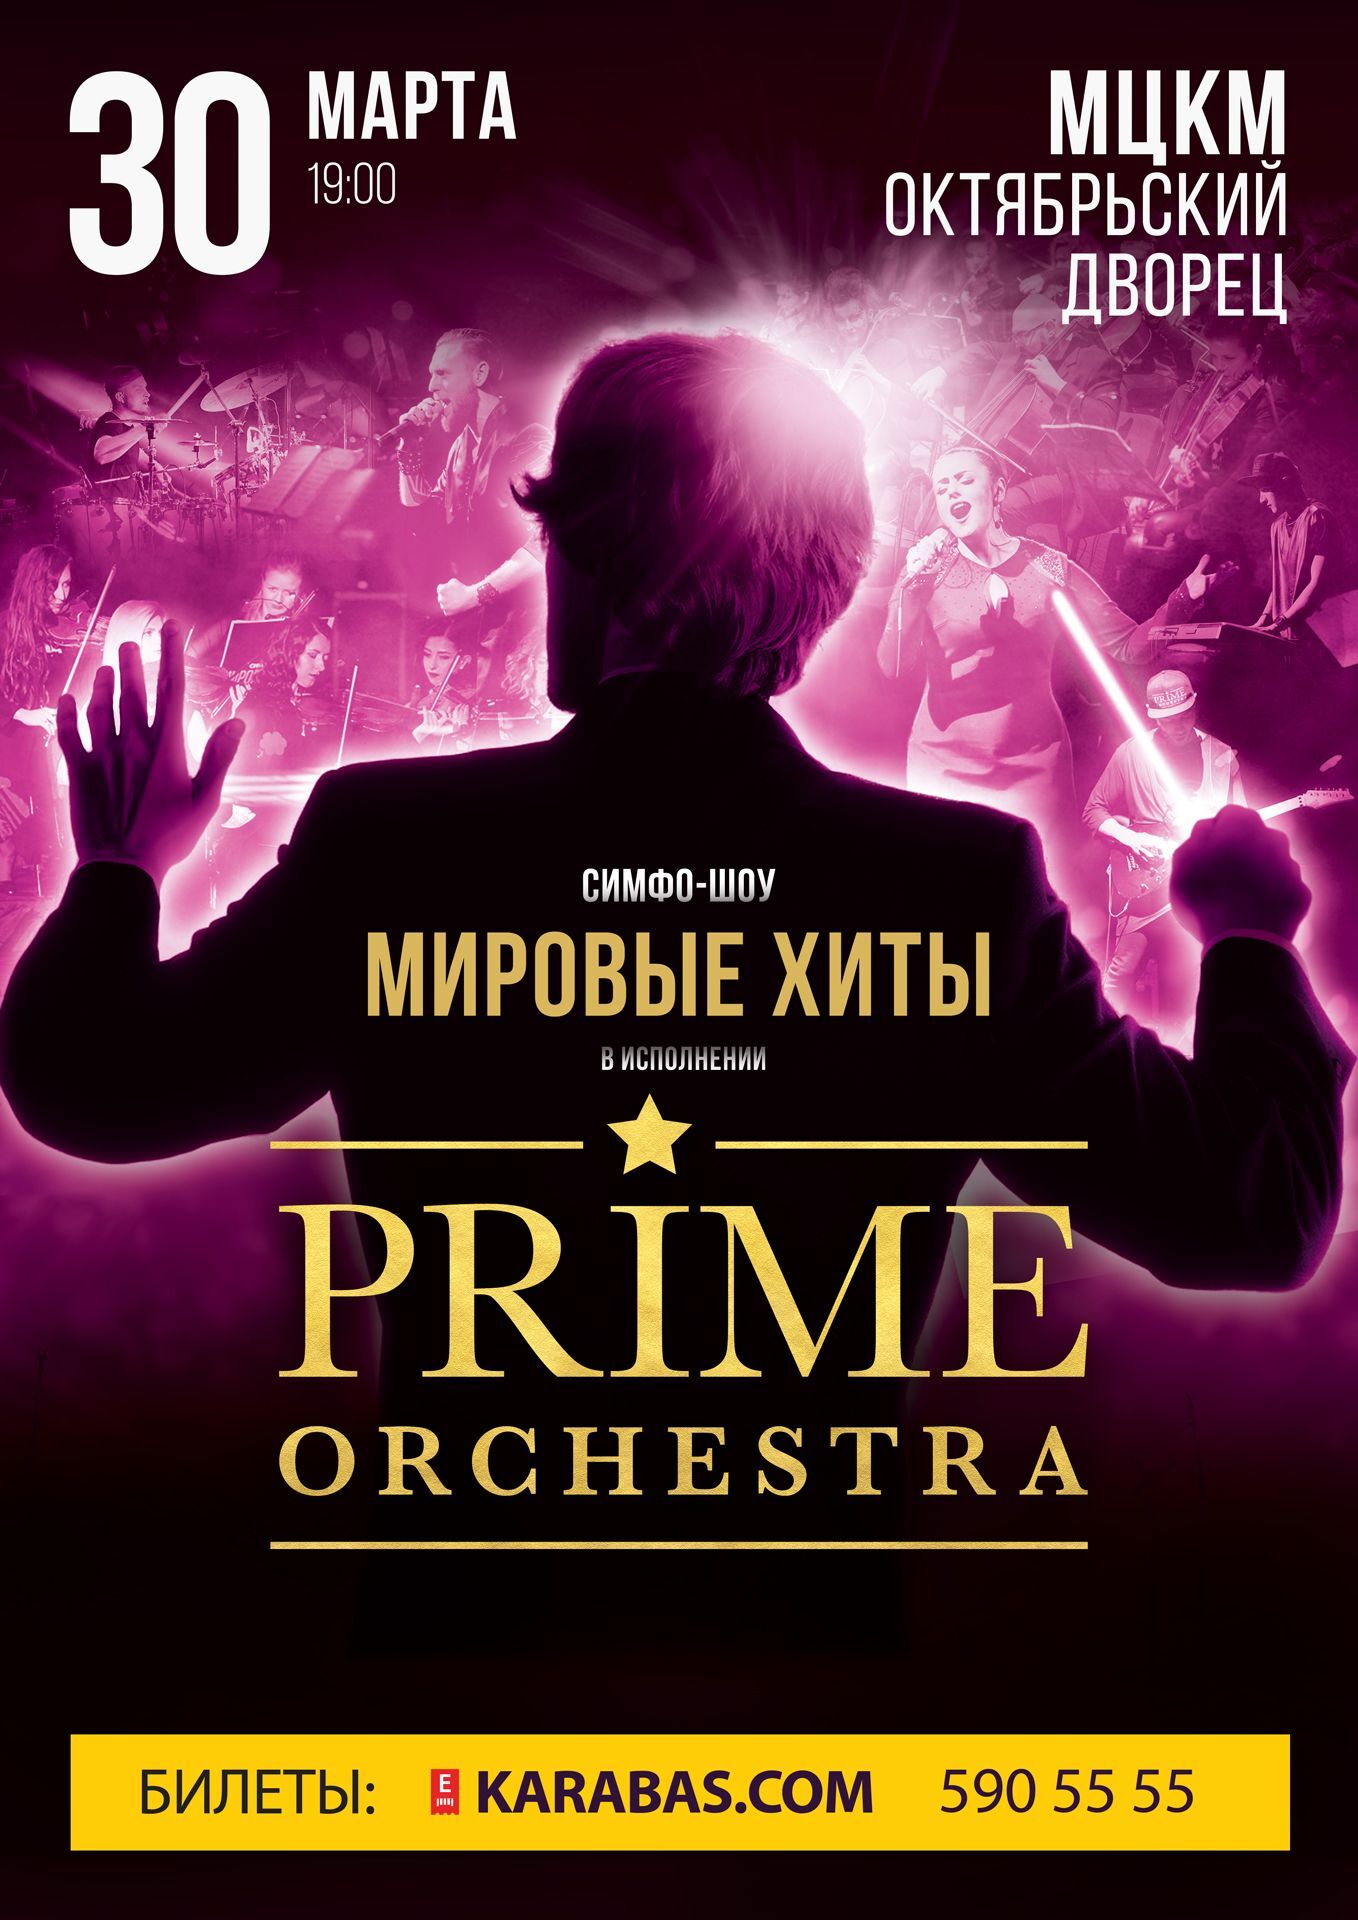 Prime Orchestra порадует поклонников новой программой из цикла "Мировые хиты"